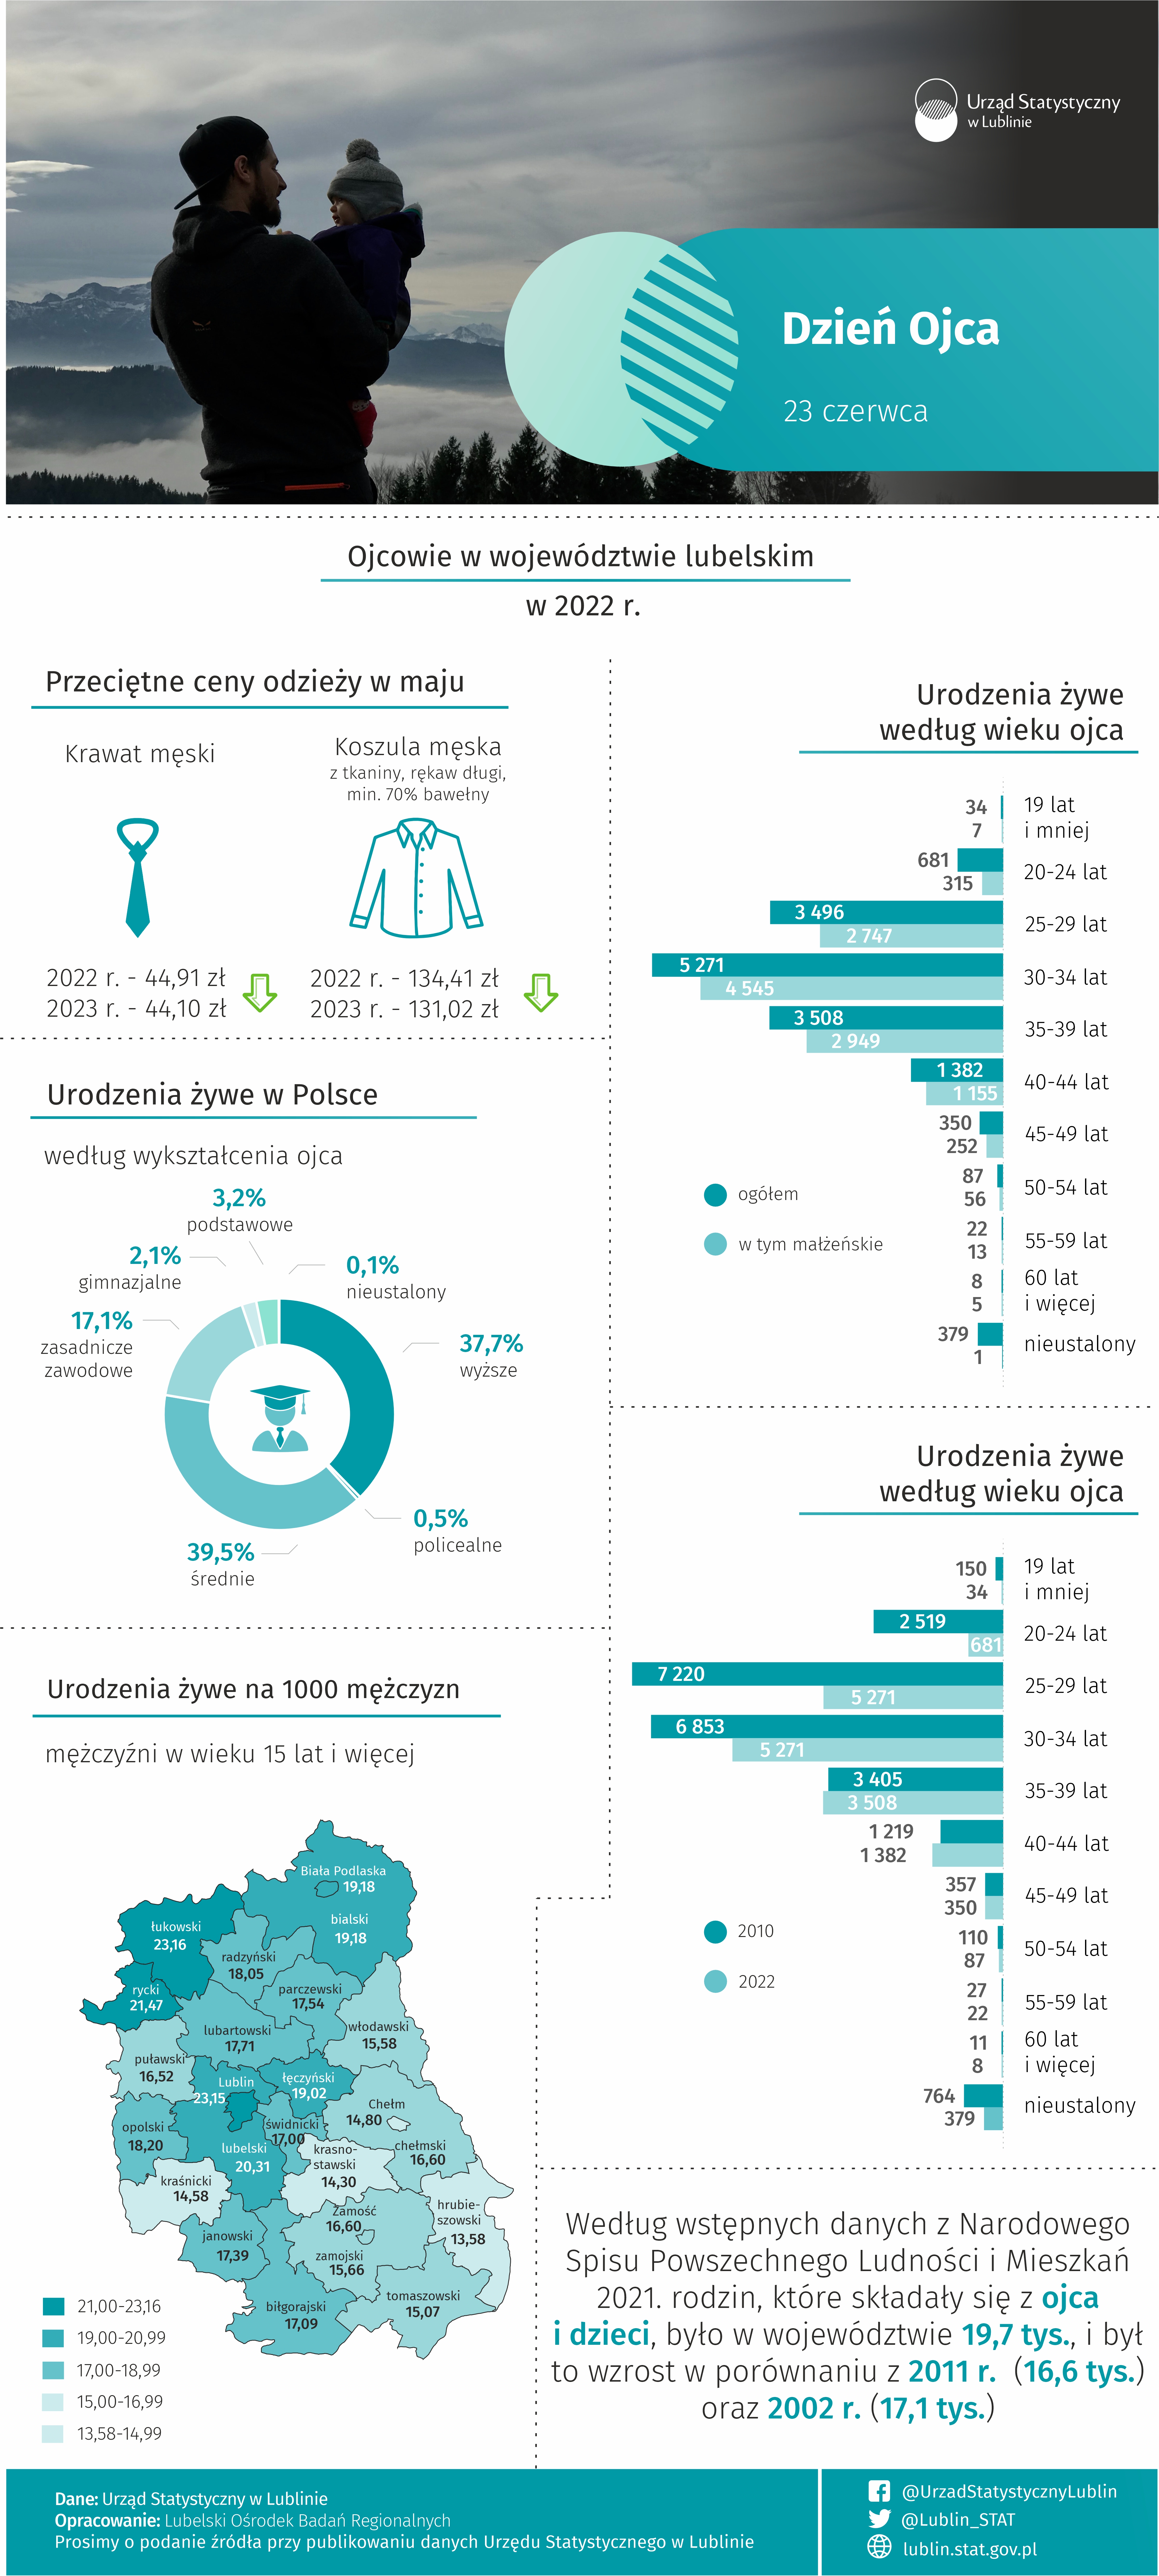 Infografika na Dzień Ojca zawierająca dane dotyczące urodzeń żywych w 2022 r. według cech ojców oraz przeciętne ceny odzieży